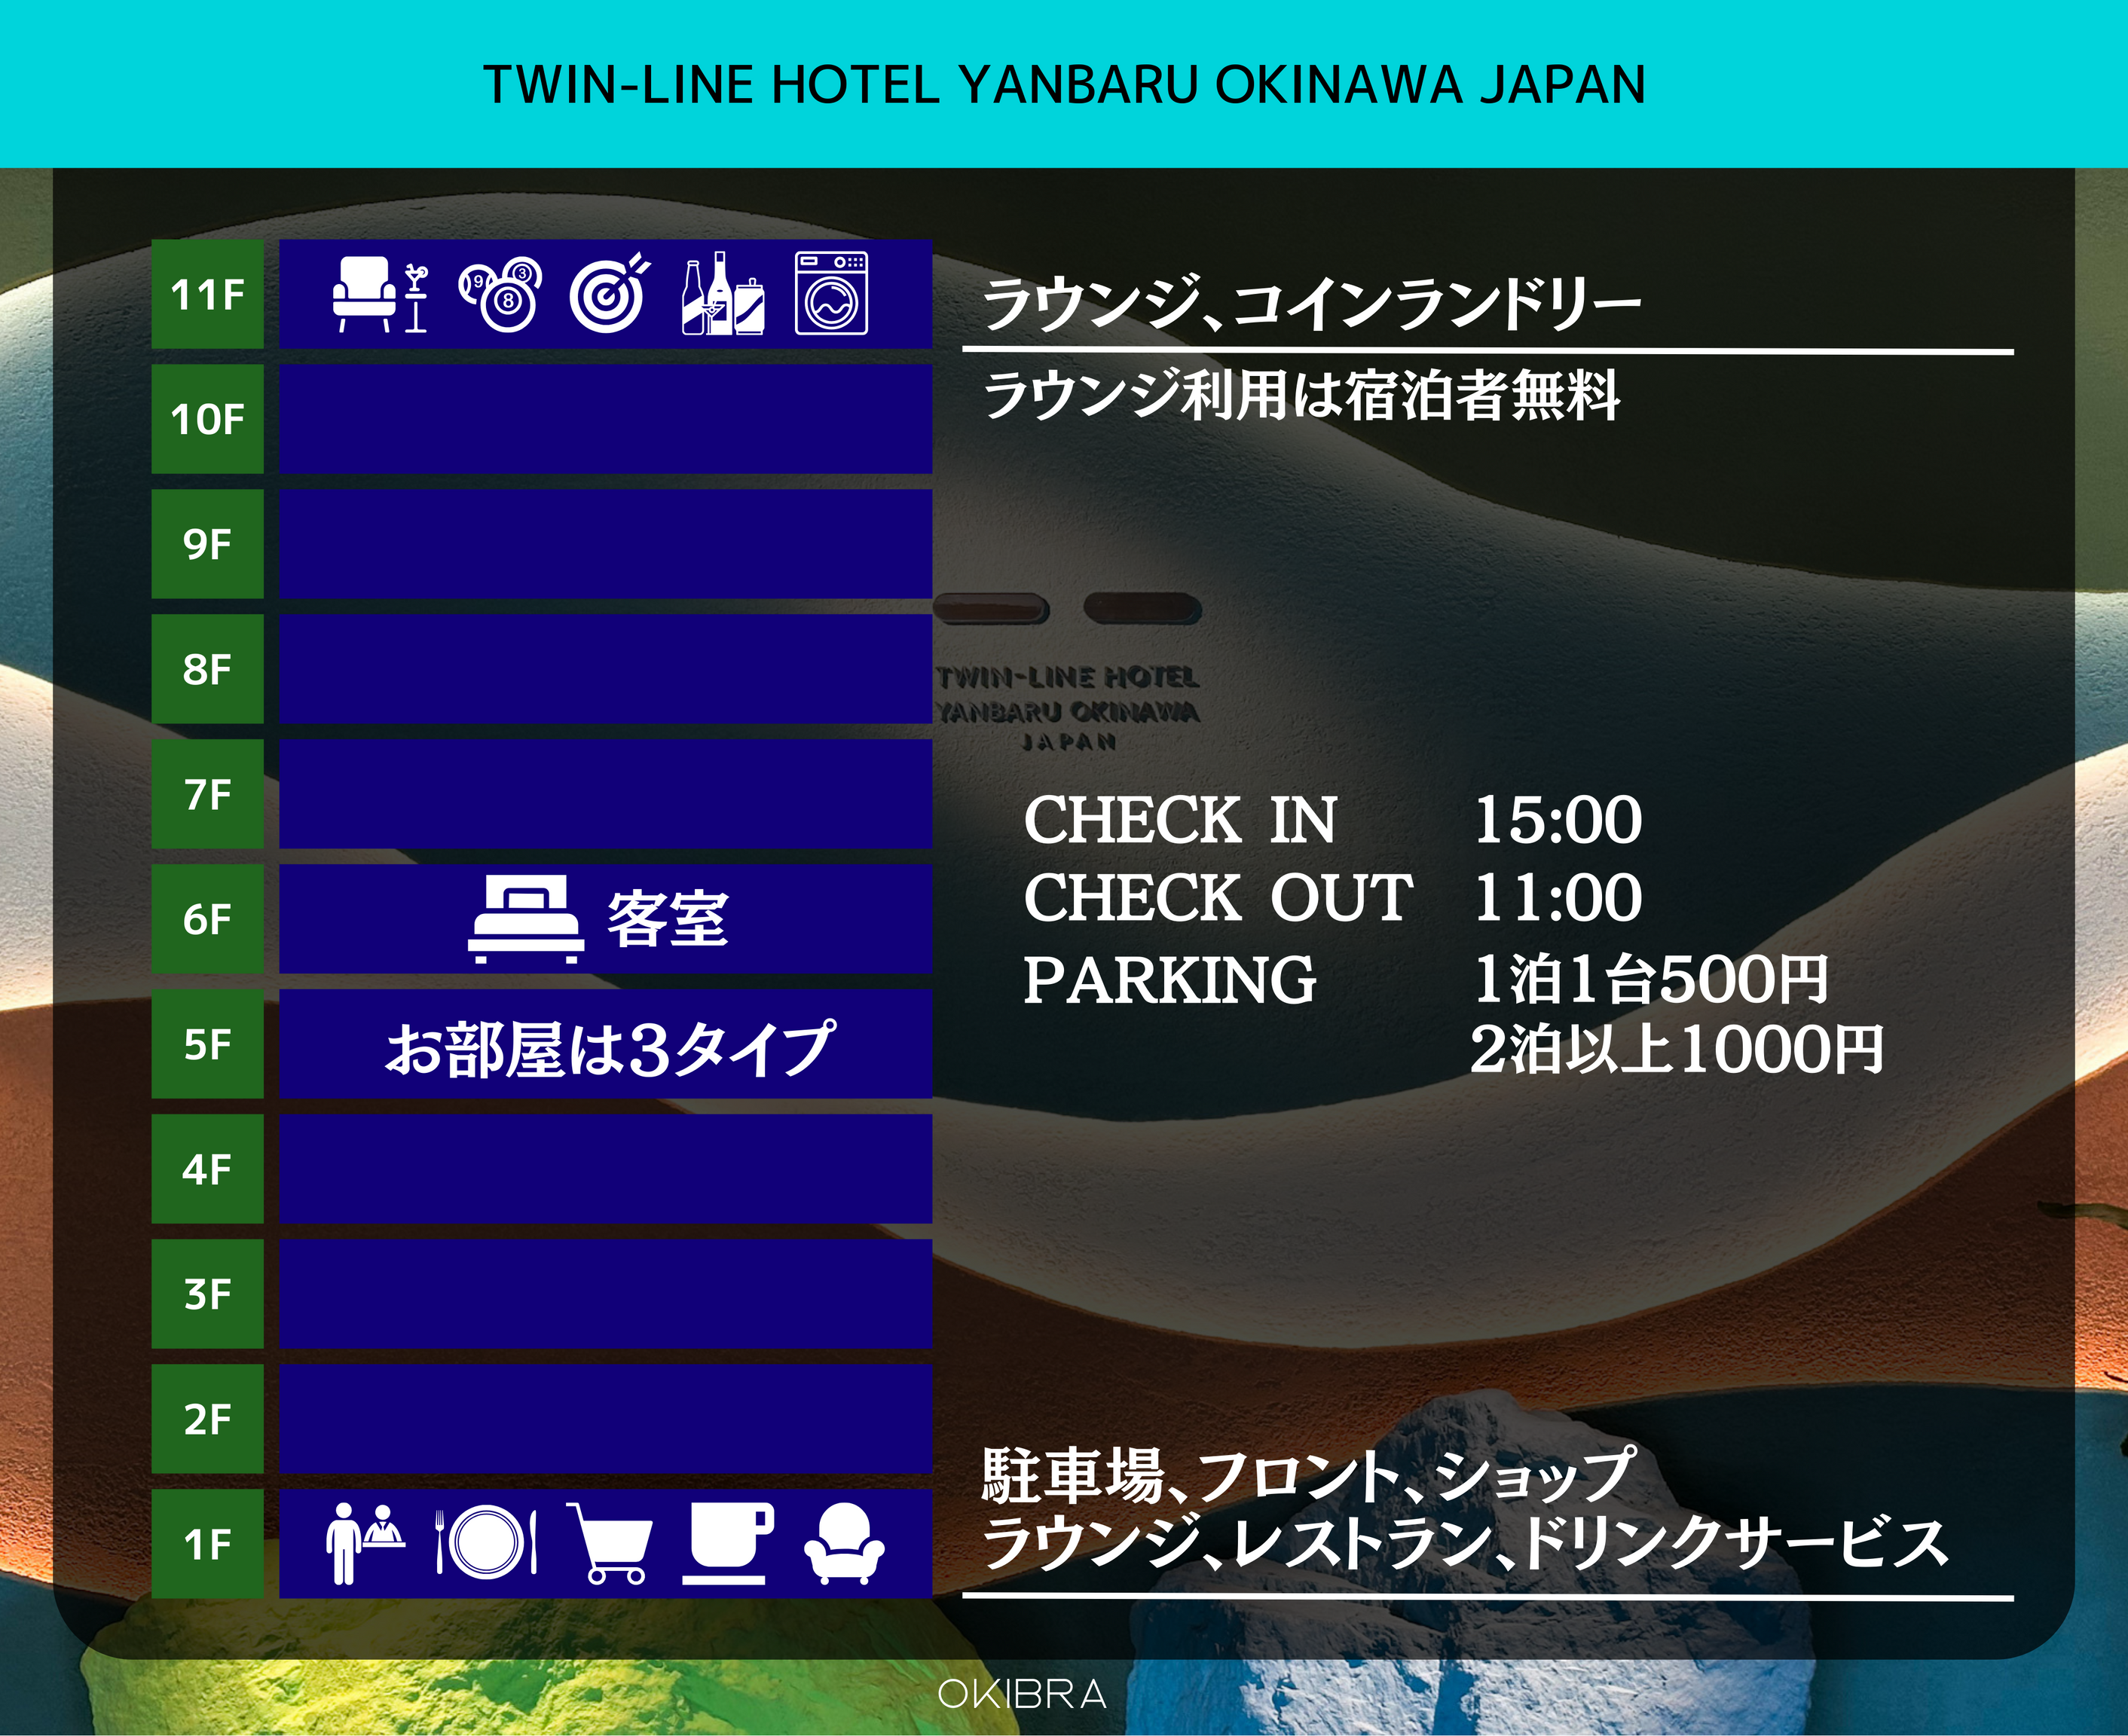 TWIN LINE HOTEL YANBARU OKINAWA JAPANの簡略マップ